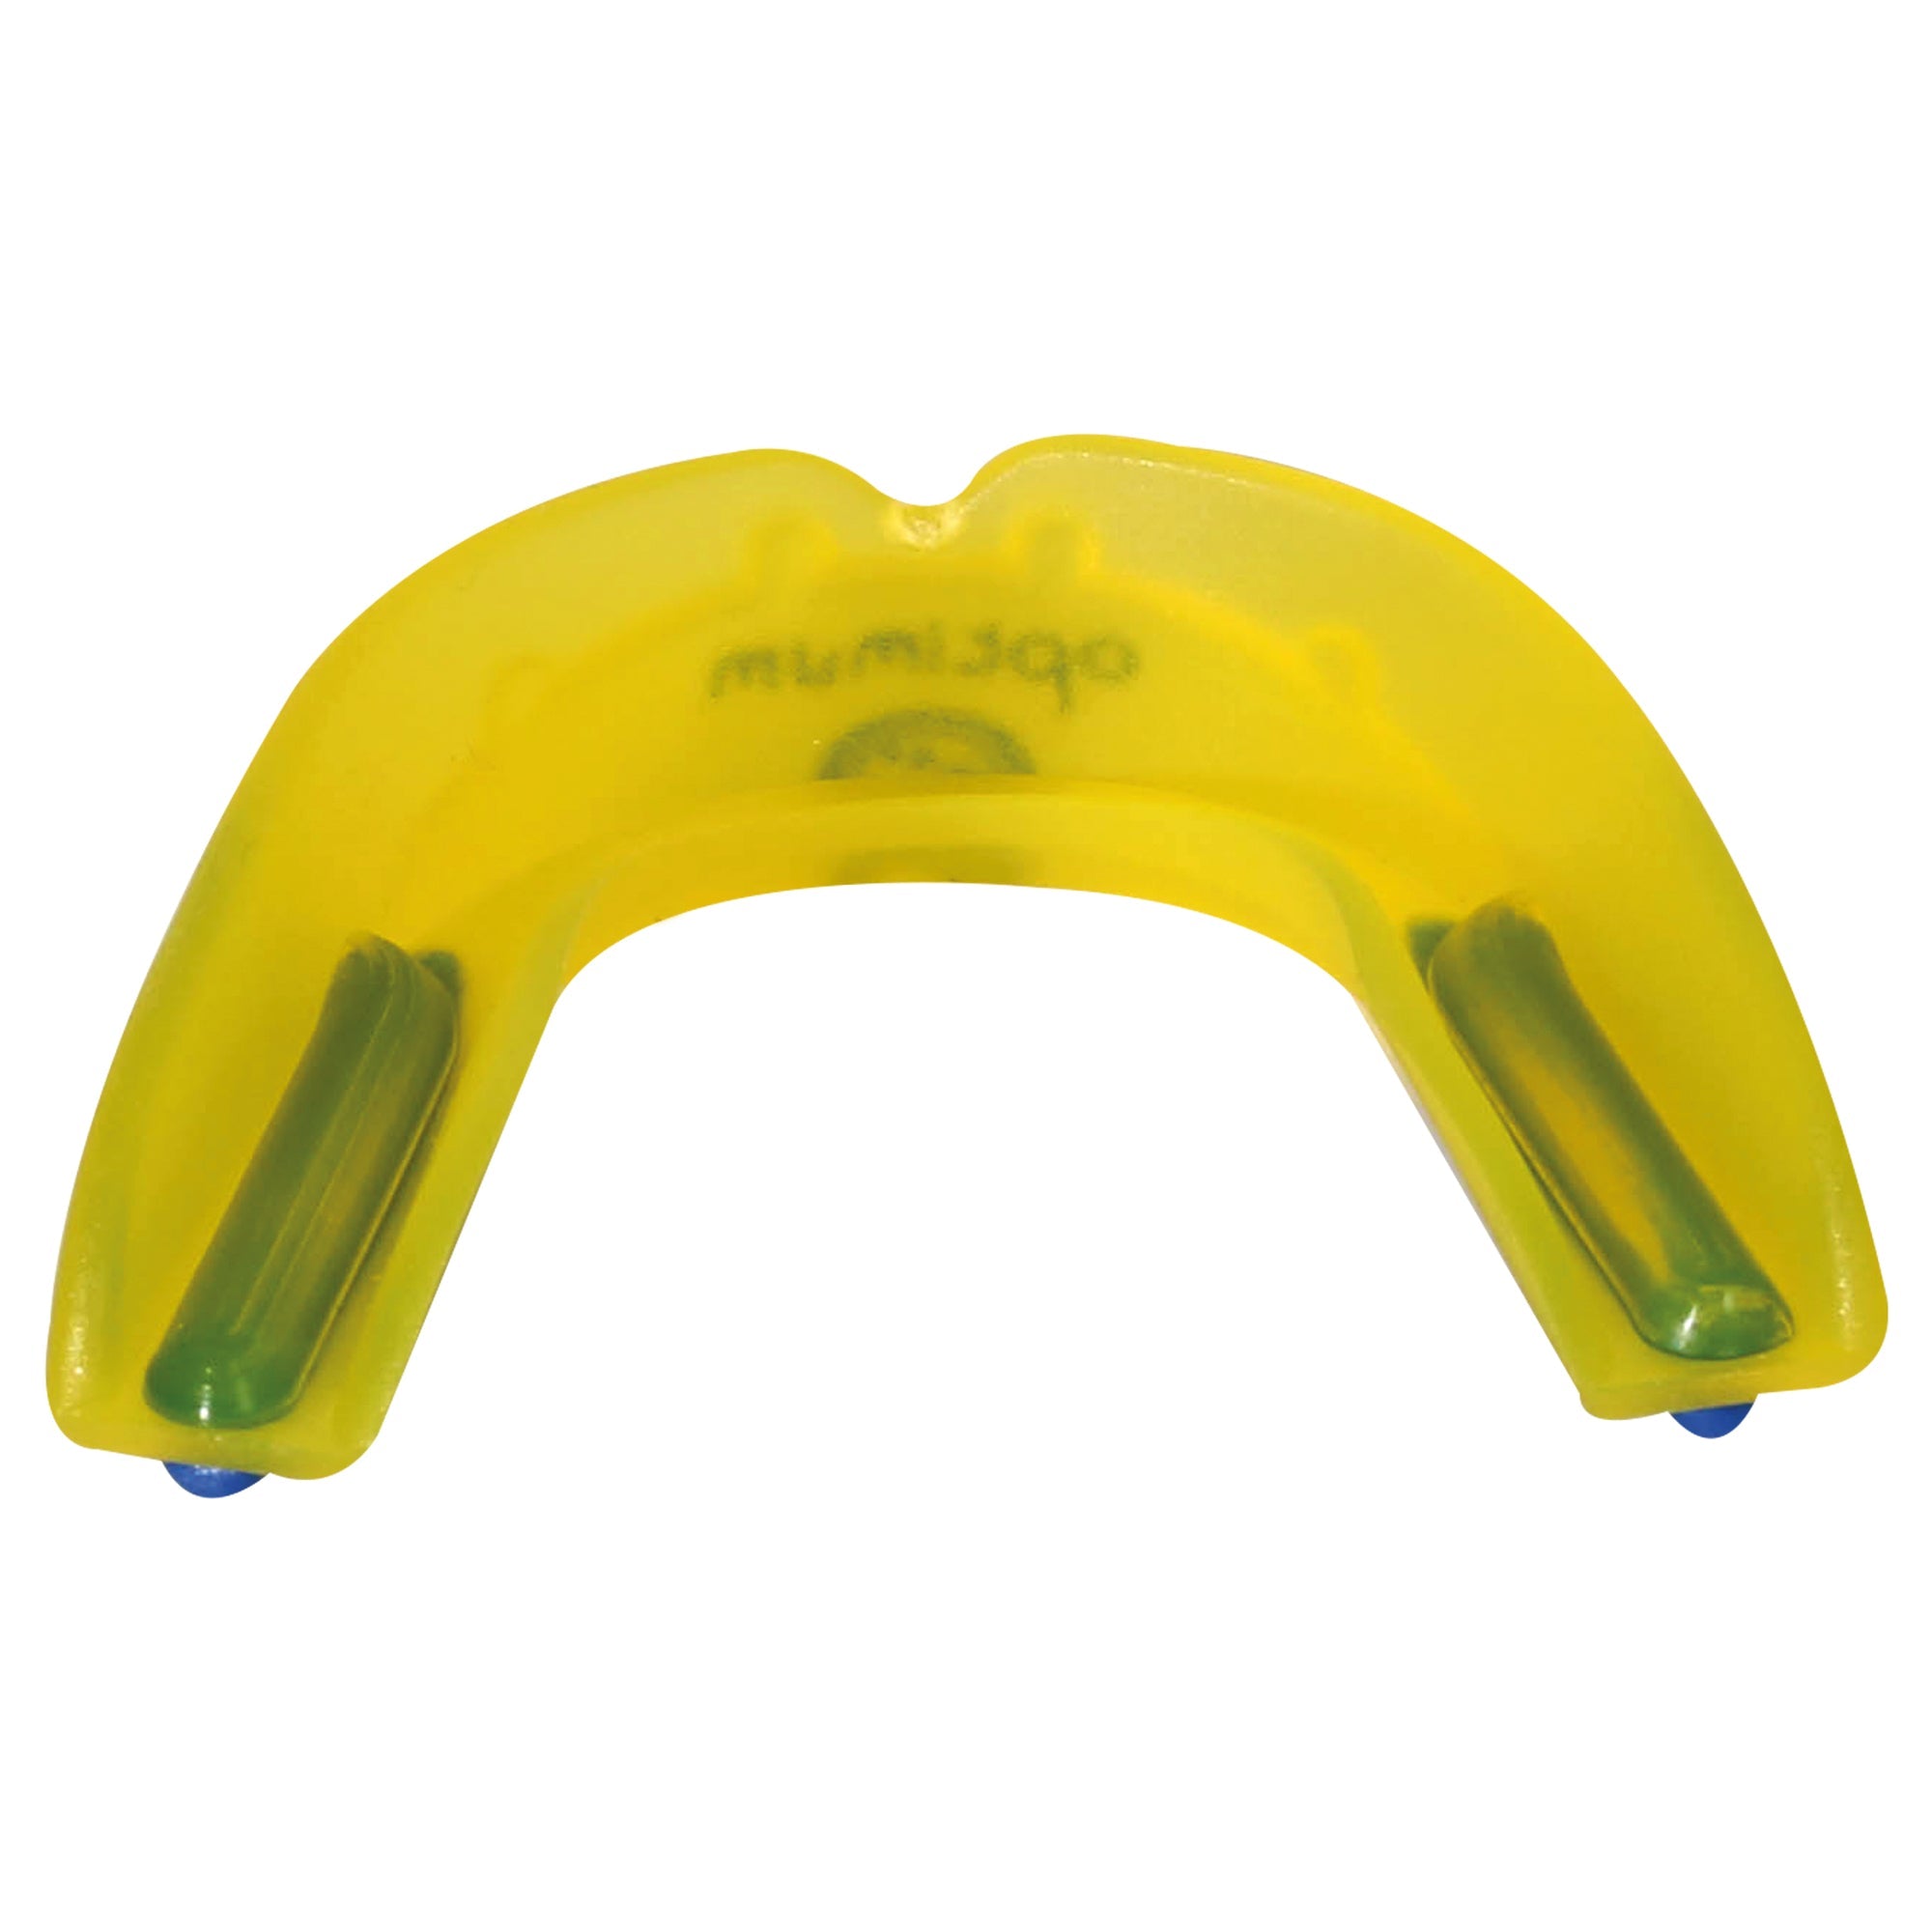 Matrix Mouthguard Yellow - Optimum